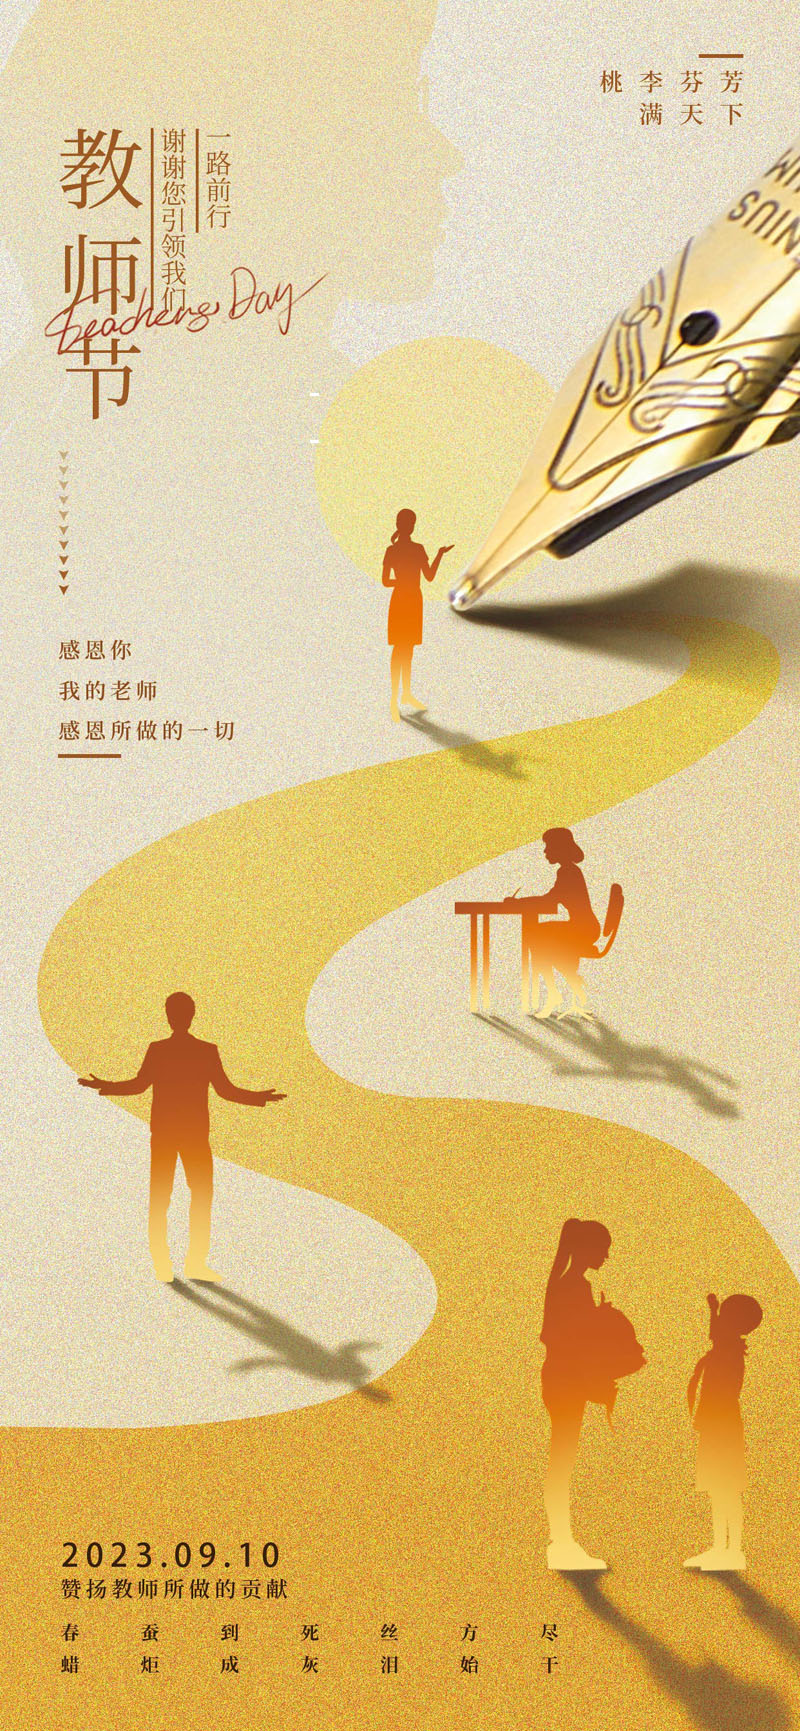 67款感恩教师节节日节庆活动宣传海报展板PSD模板 设计素材 第11张